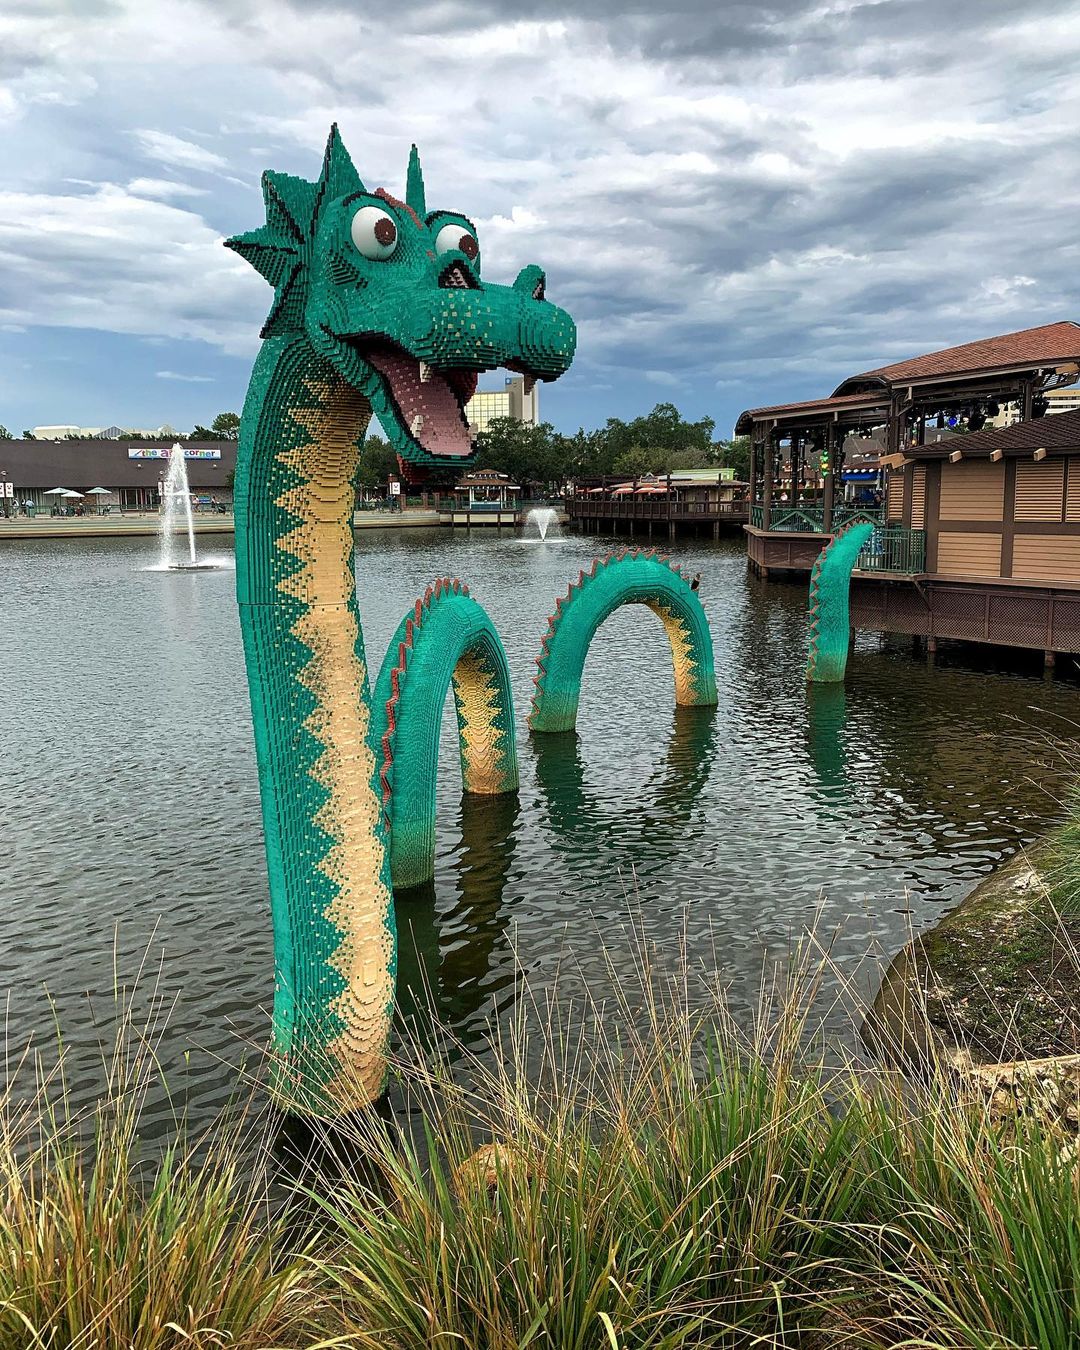 Negozio Lego a Disney Springs - Orlando fuori dai parchi